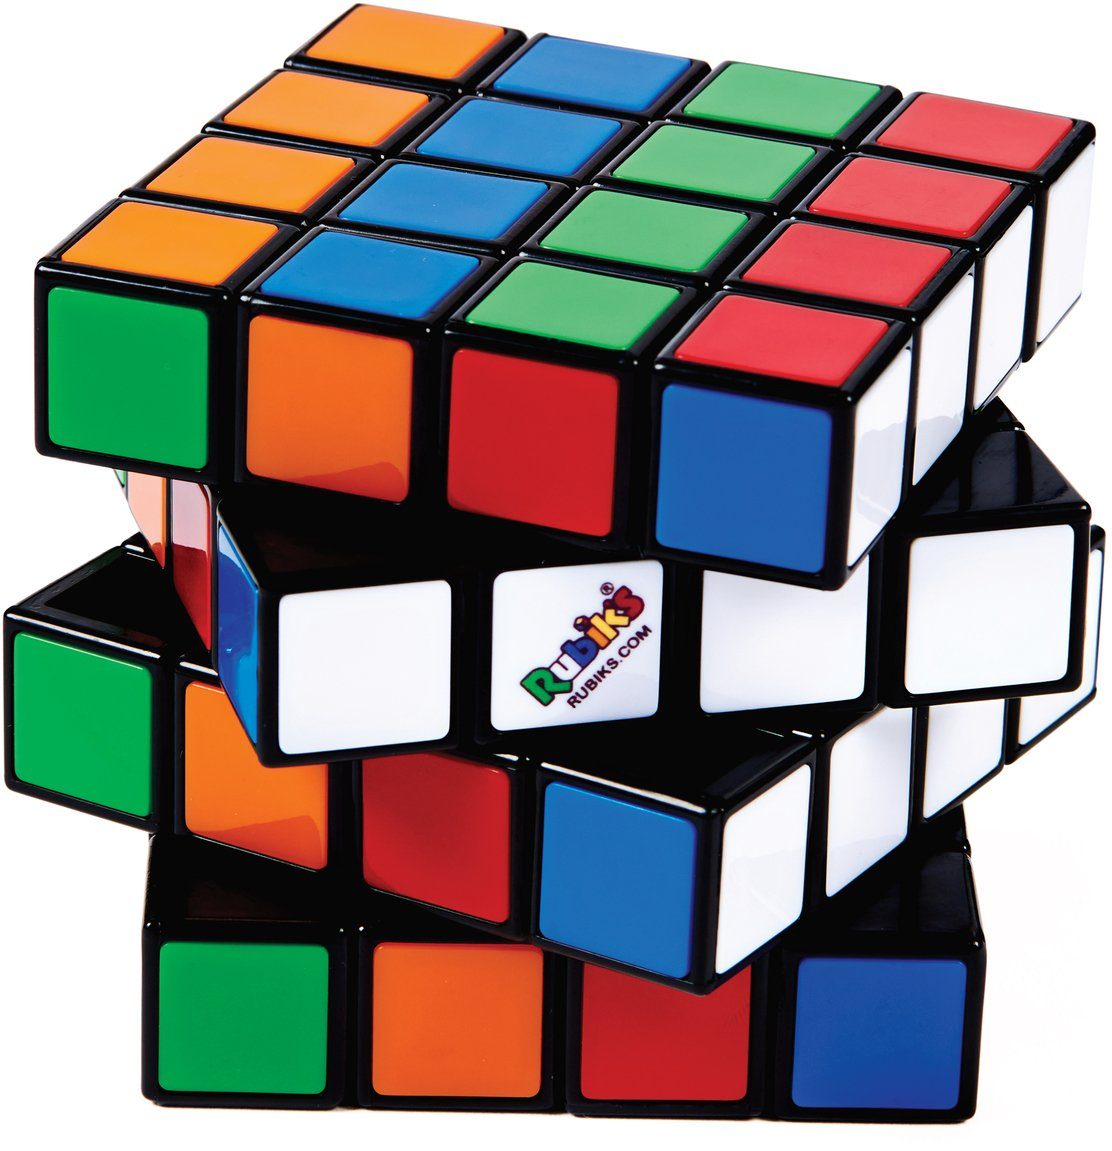 22 Knobelspiel Rubik's Master Thinkfun® Spiel,